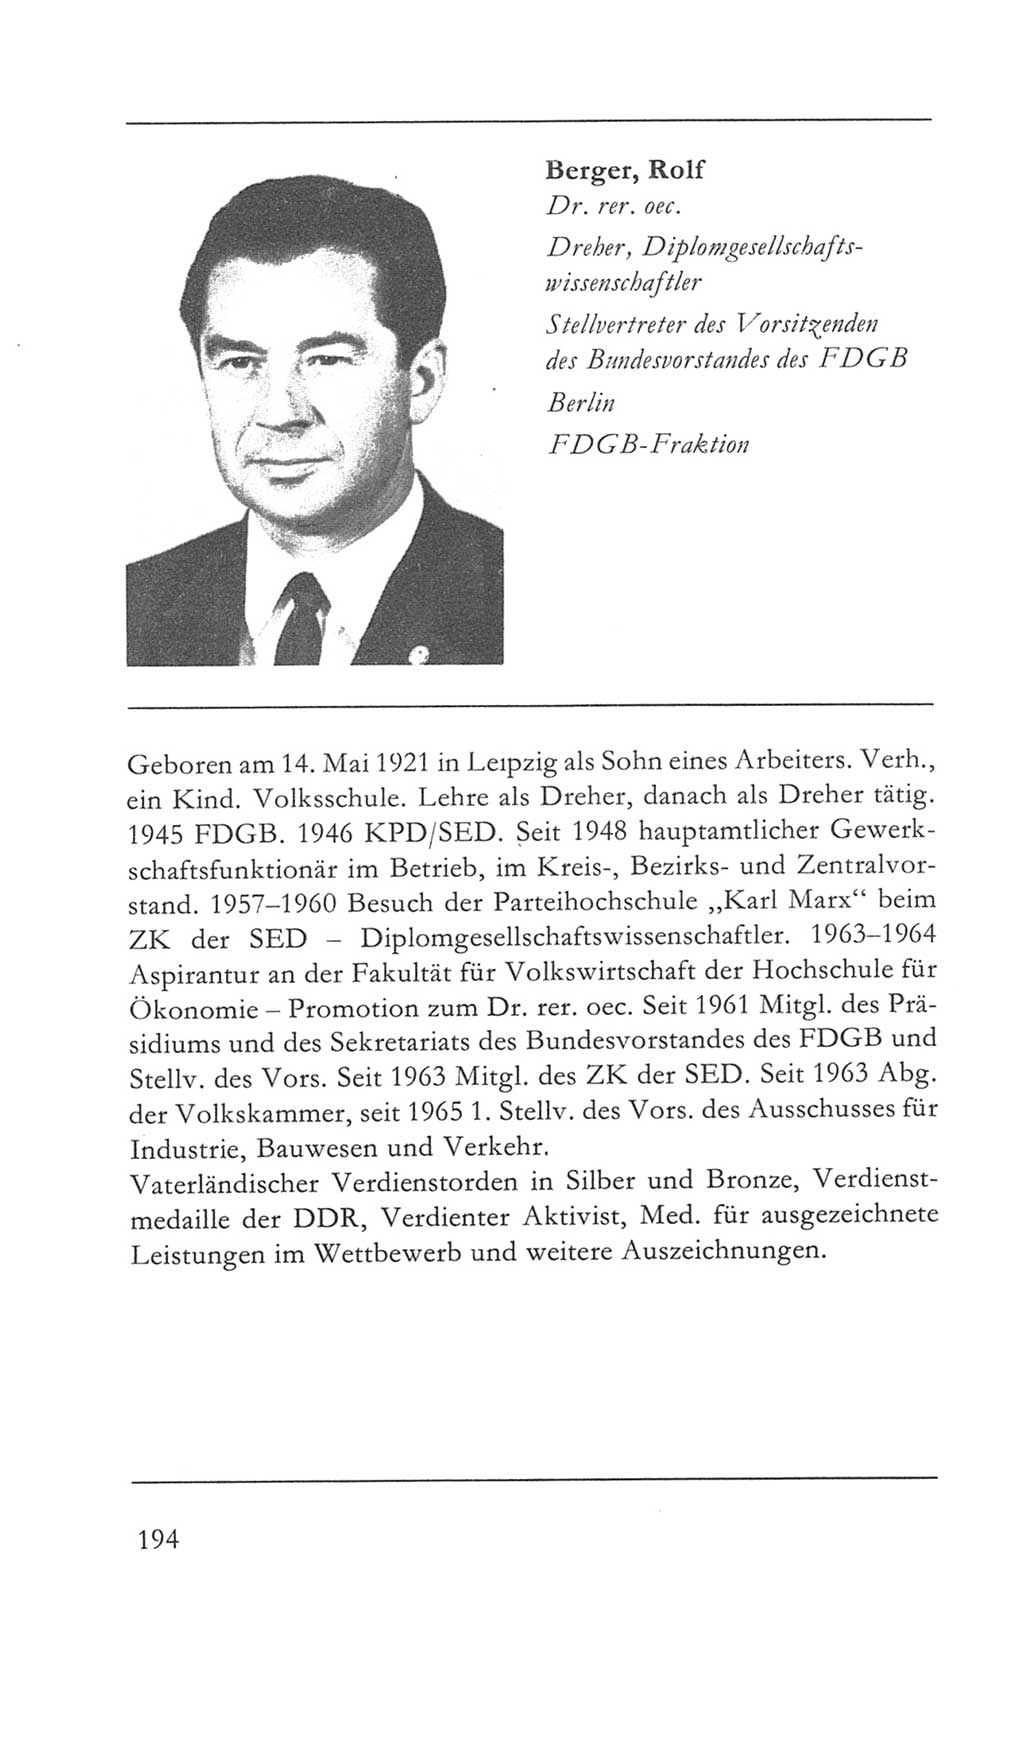 Volkskammer (VK) der Deutschen Demokratischen Republik (DDR) 5. Wahlperiode 1967-1971, Seite 194 (VK. DDR 5. WP. 1967-1971, S. 194)